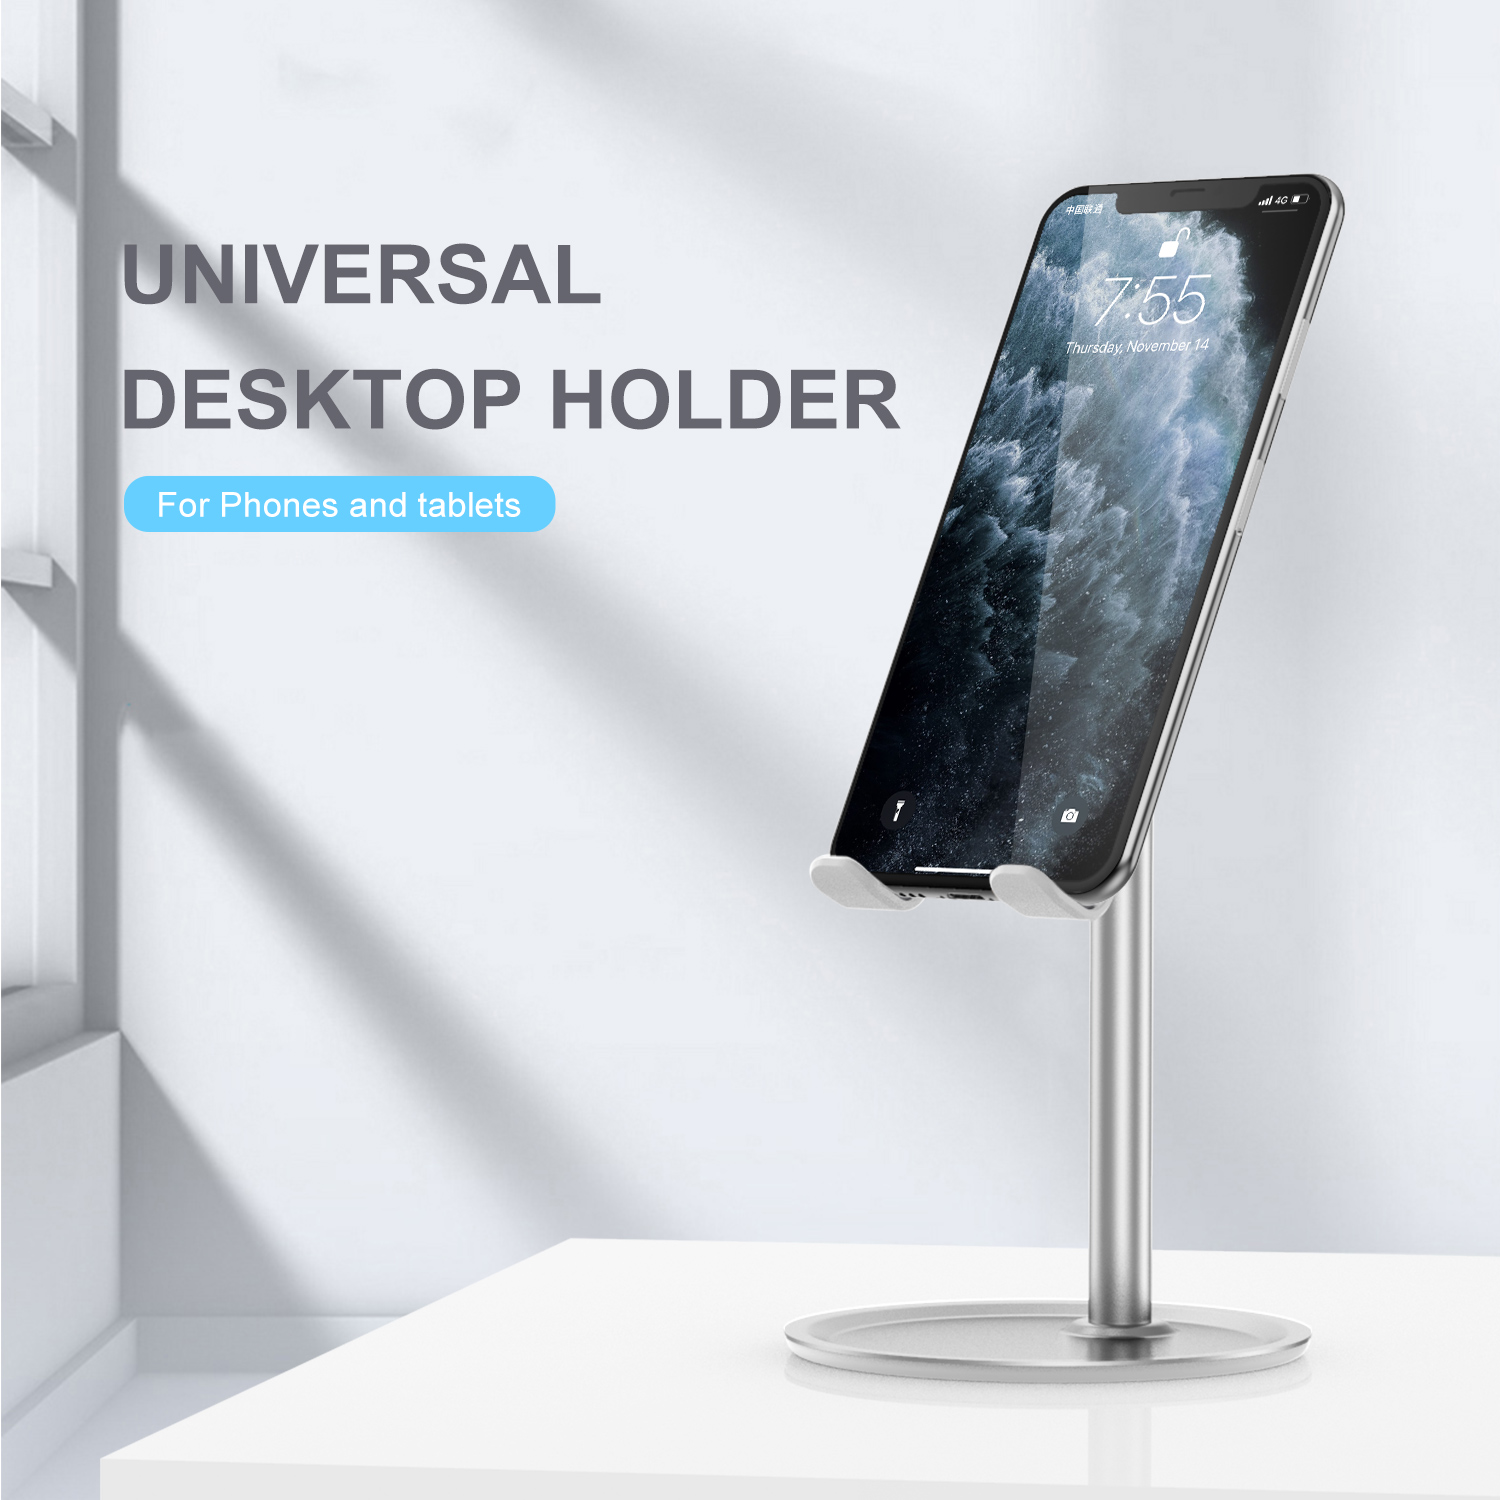 Uslion-Desktop-Phone-Holder-Universal-Tablet-Phone-Mount-Bracket-Adjustable-Stand-for-iPhone-Huawei--1709257-7